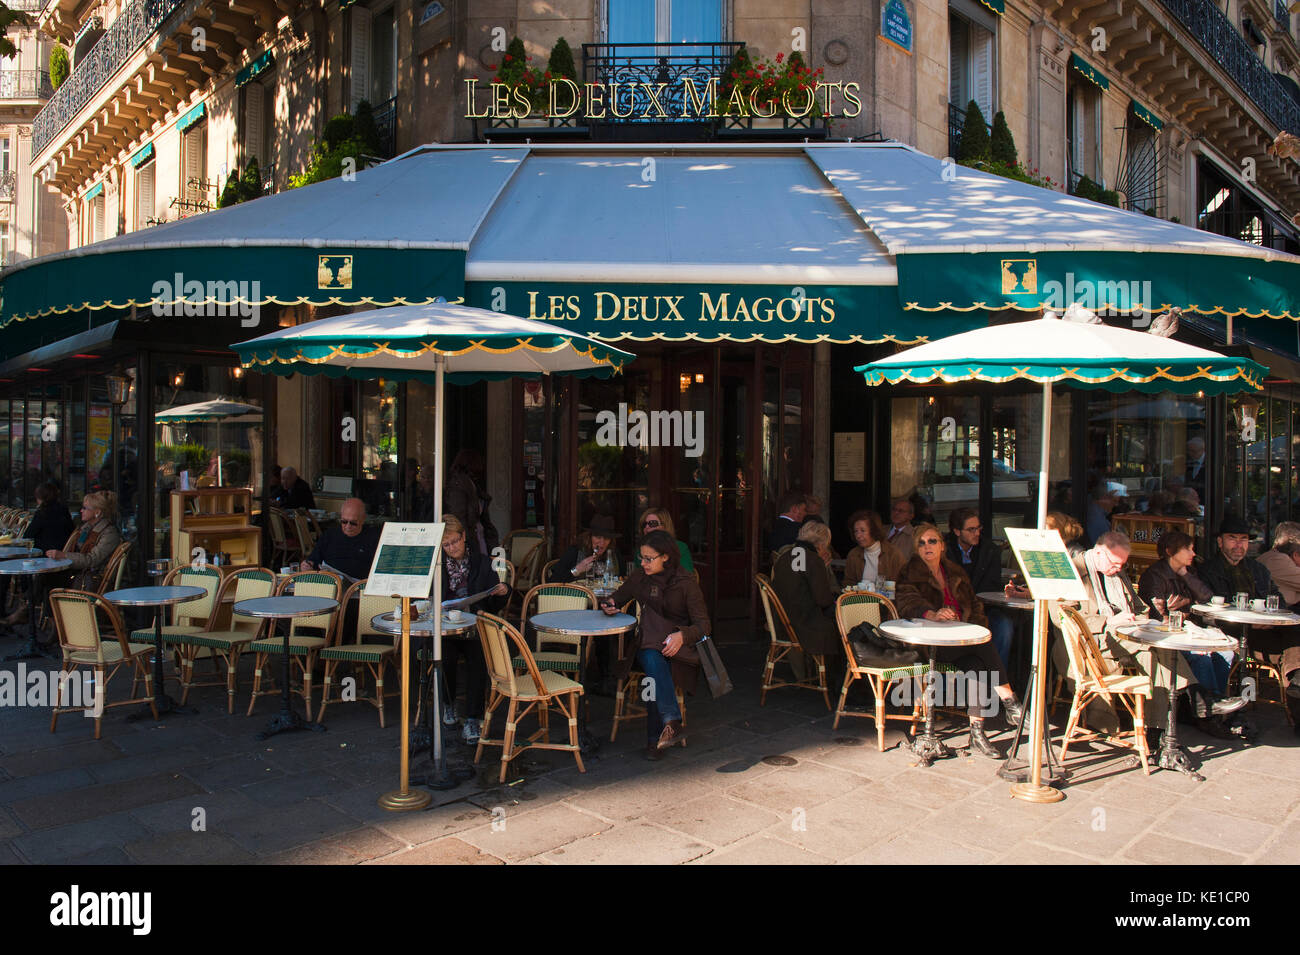 Cafe Les Deux Magots, Saint Germain des Pres, Paris, France Cafe Les Deux Magots, Saint Germain des Pres, Paris, Frankreich Stock Photo